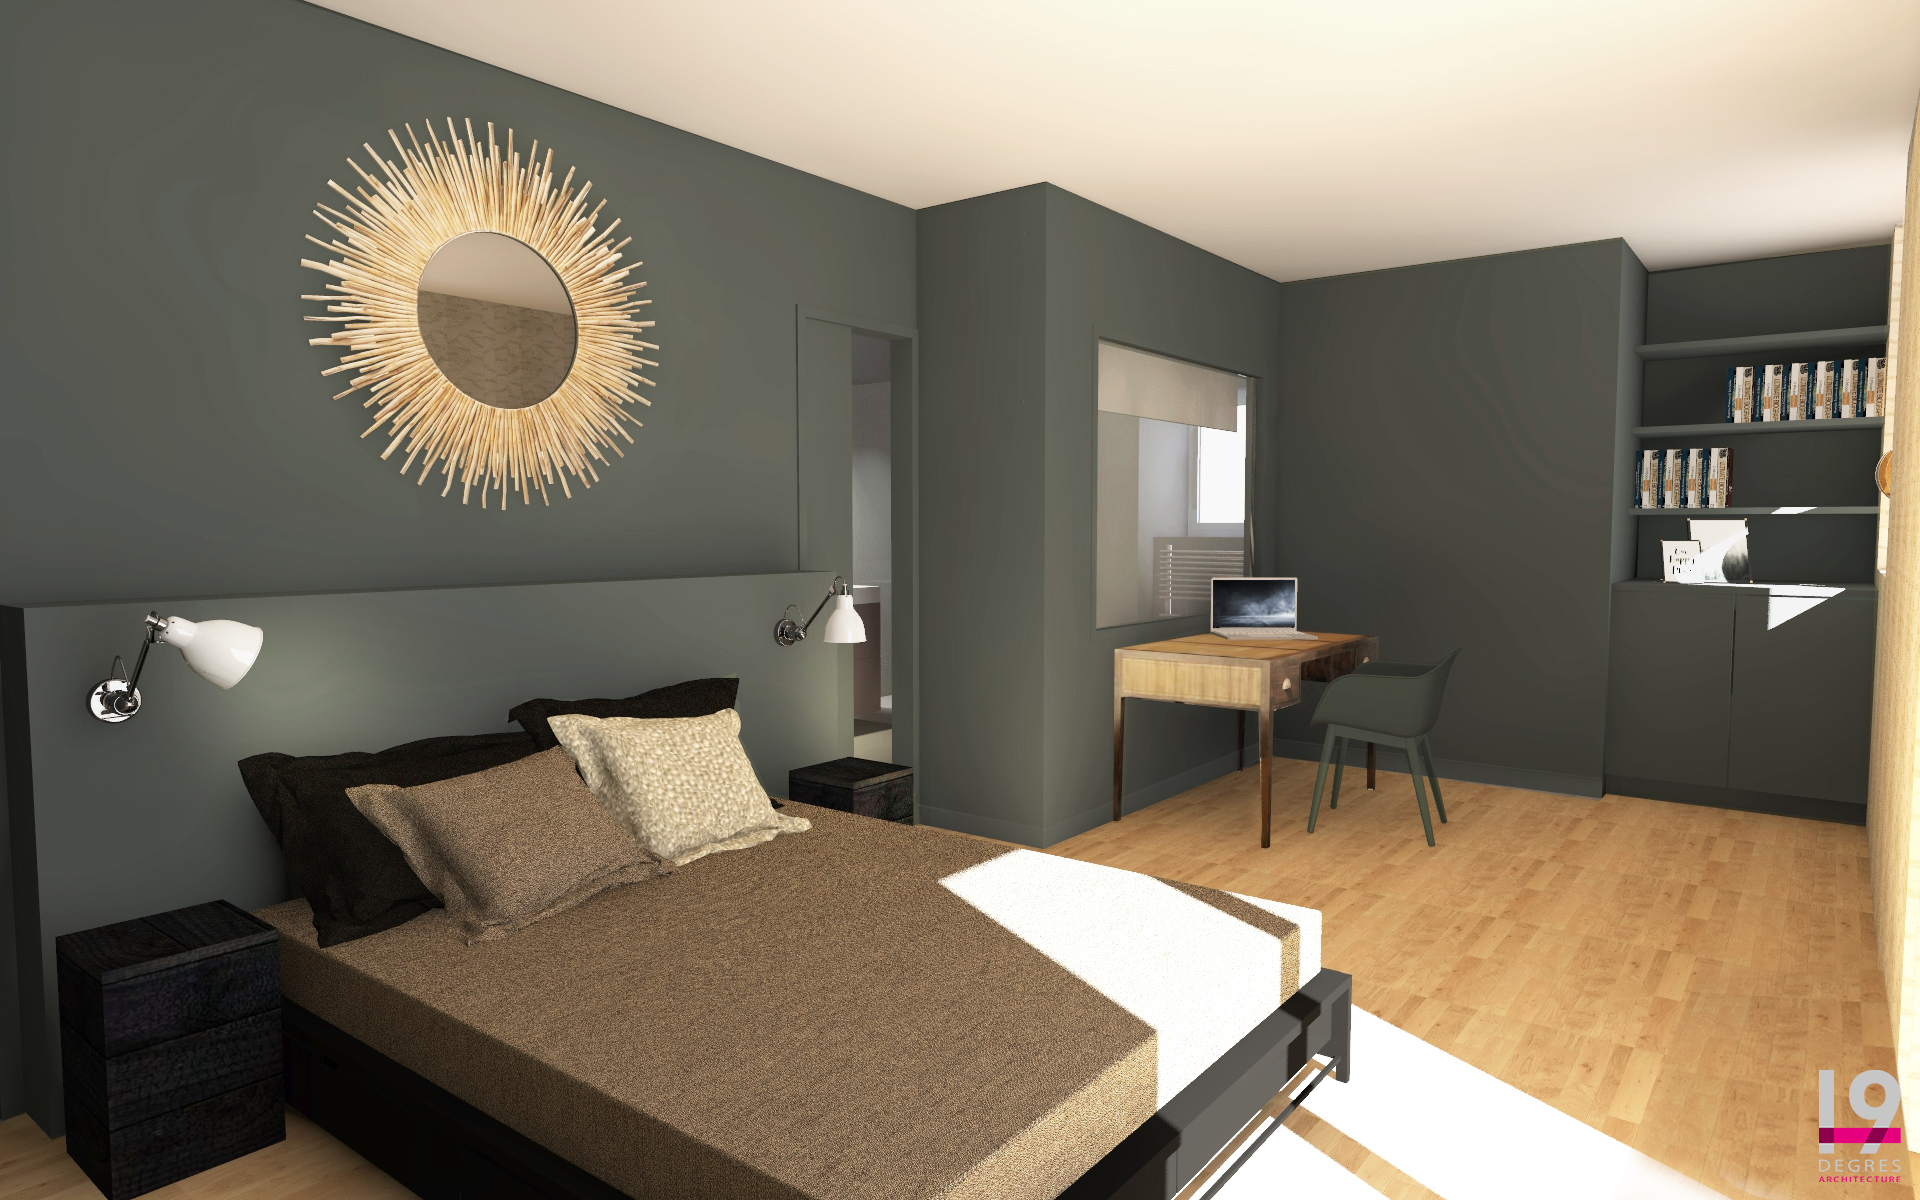 3D d'une chambre aux murs verts et au mobilier sur les tons marron.